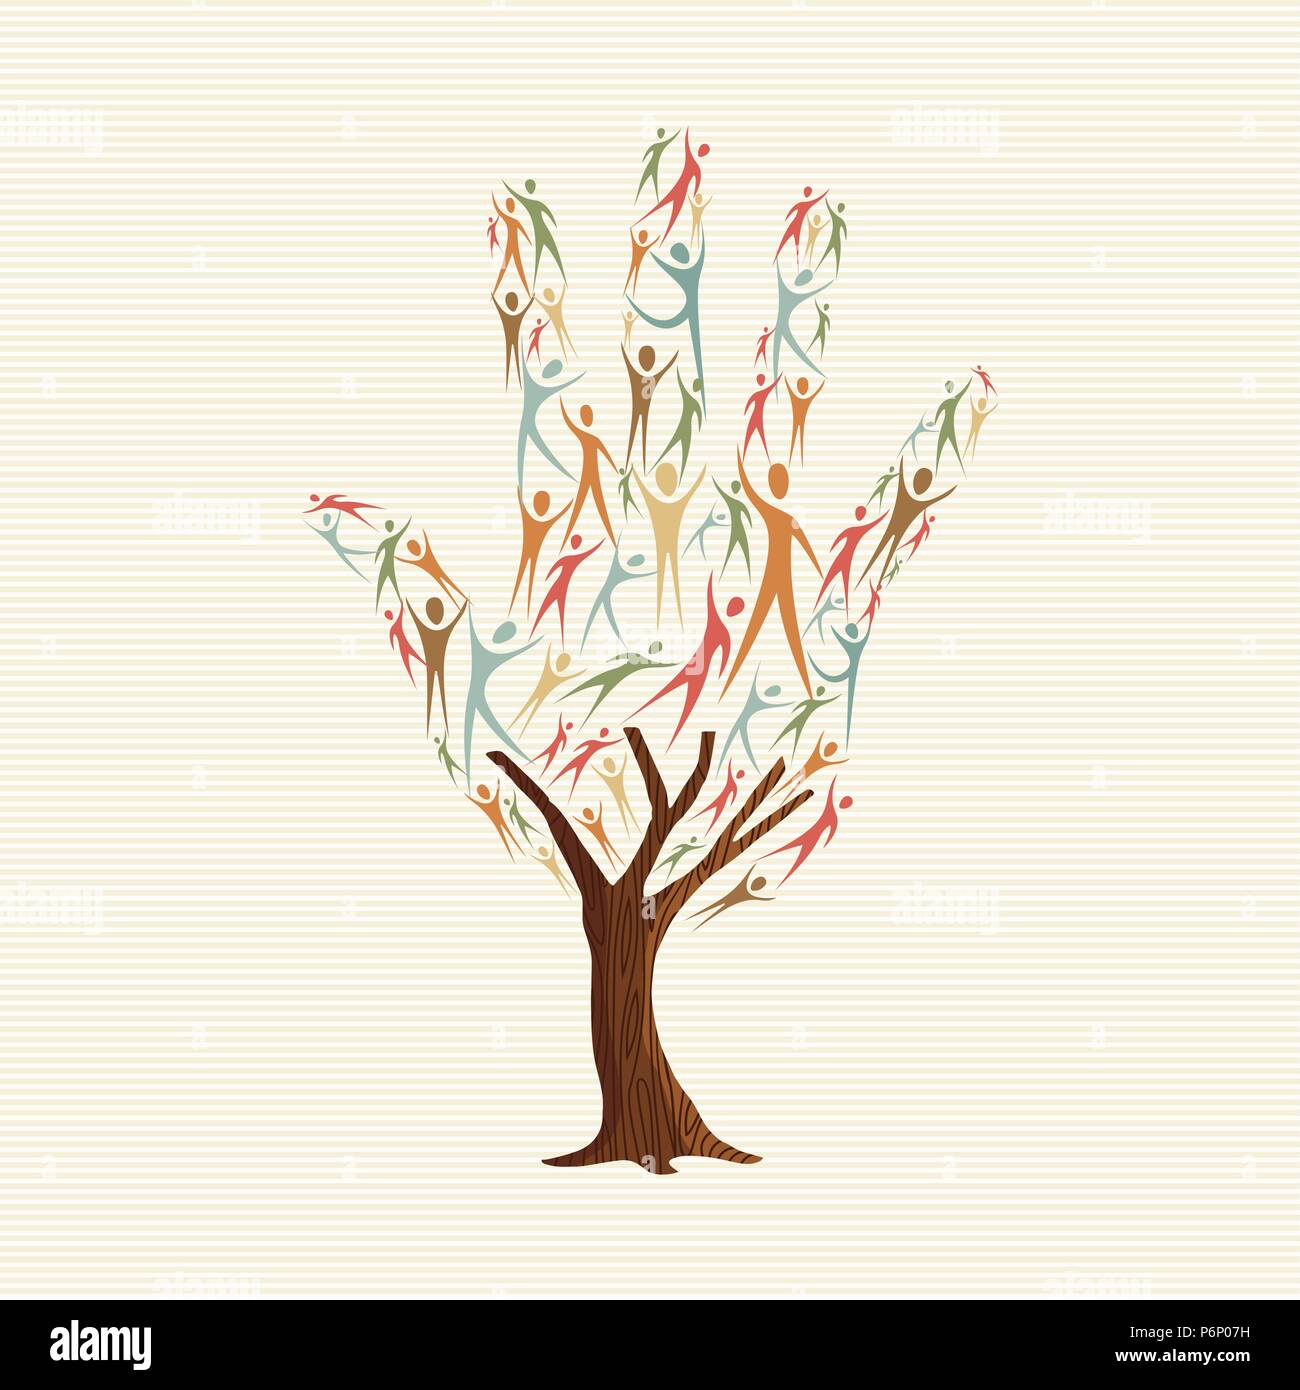 Lato albero di forma fatta di persone colorate sagome. Comunità aiuto concetto, cultura varia di gruppo o progetto sociale. EPS10 vettore. Illustrazione Vettoriale